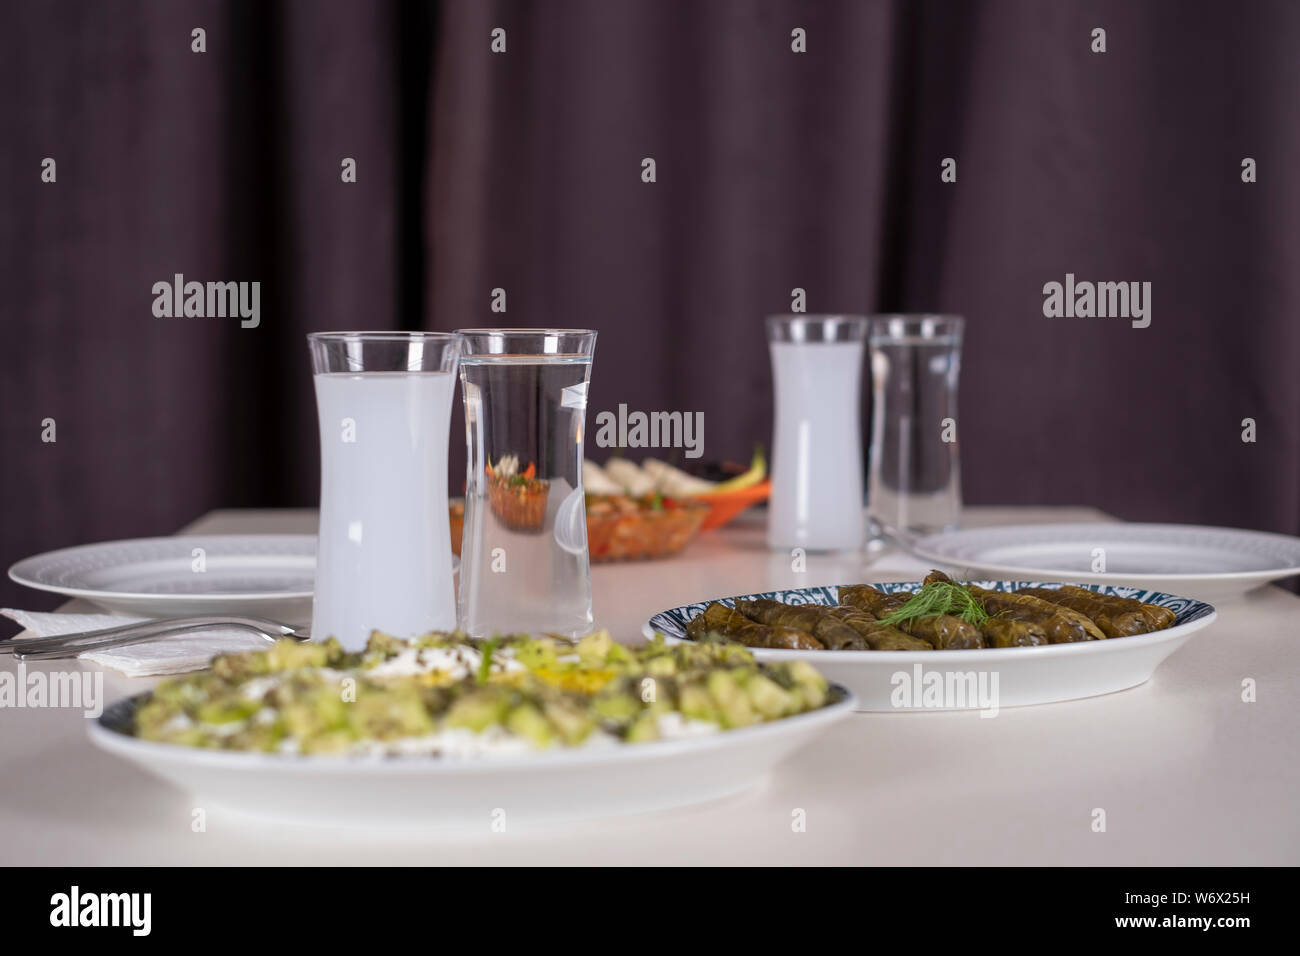 Bagno turco e greco tradizionale tavola da pranzo con alcool speciale bere raki. Ouzo e Raki turco è a secco all'anice aperitivo. Foto Stock